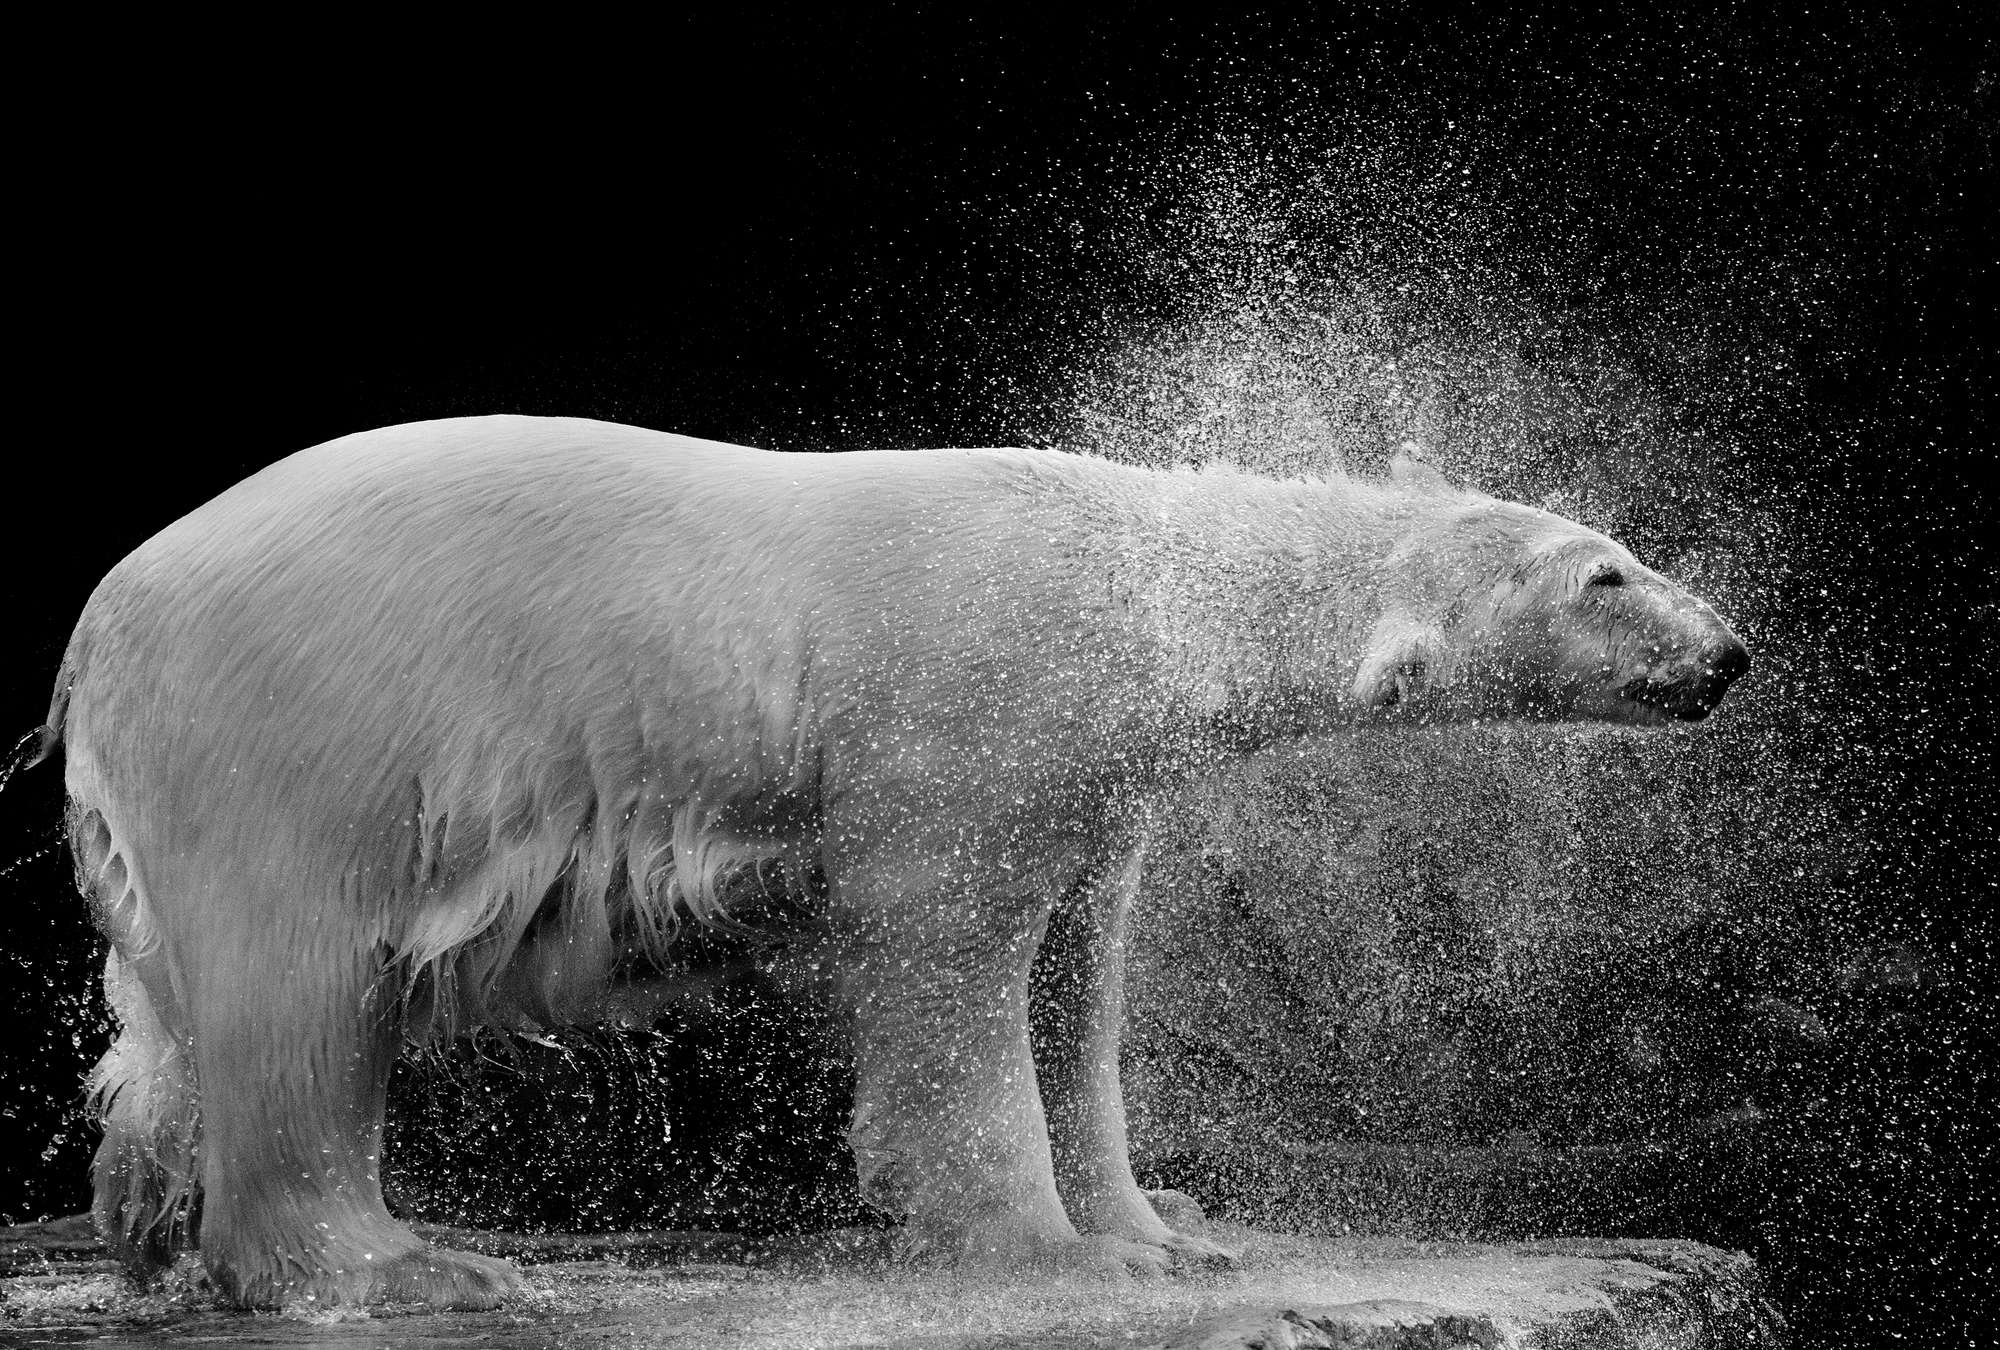             Muurschildering natte ijsbeer tegen zwarte achtergrond
        